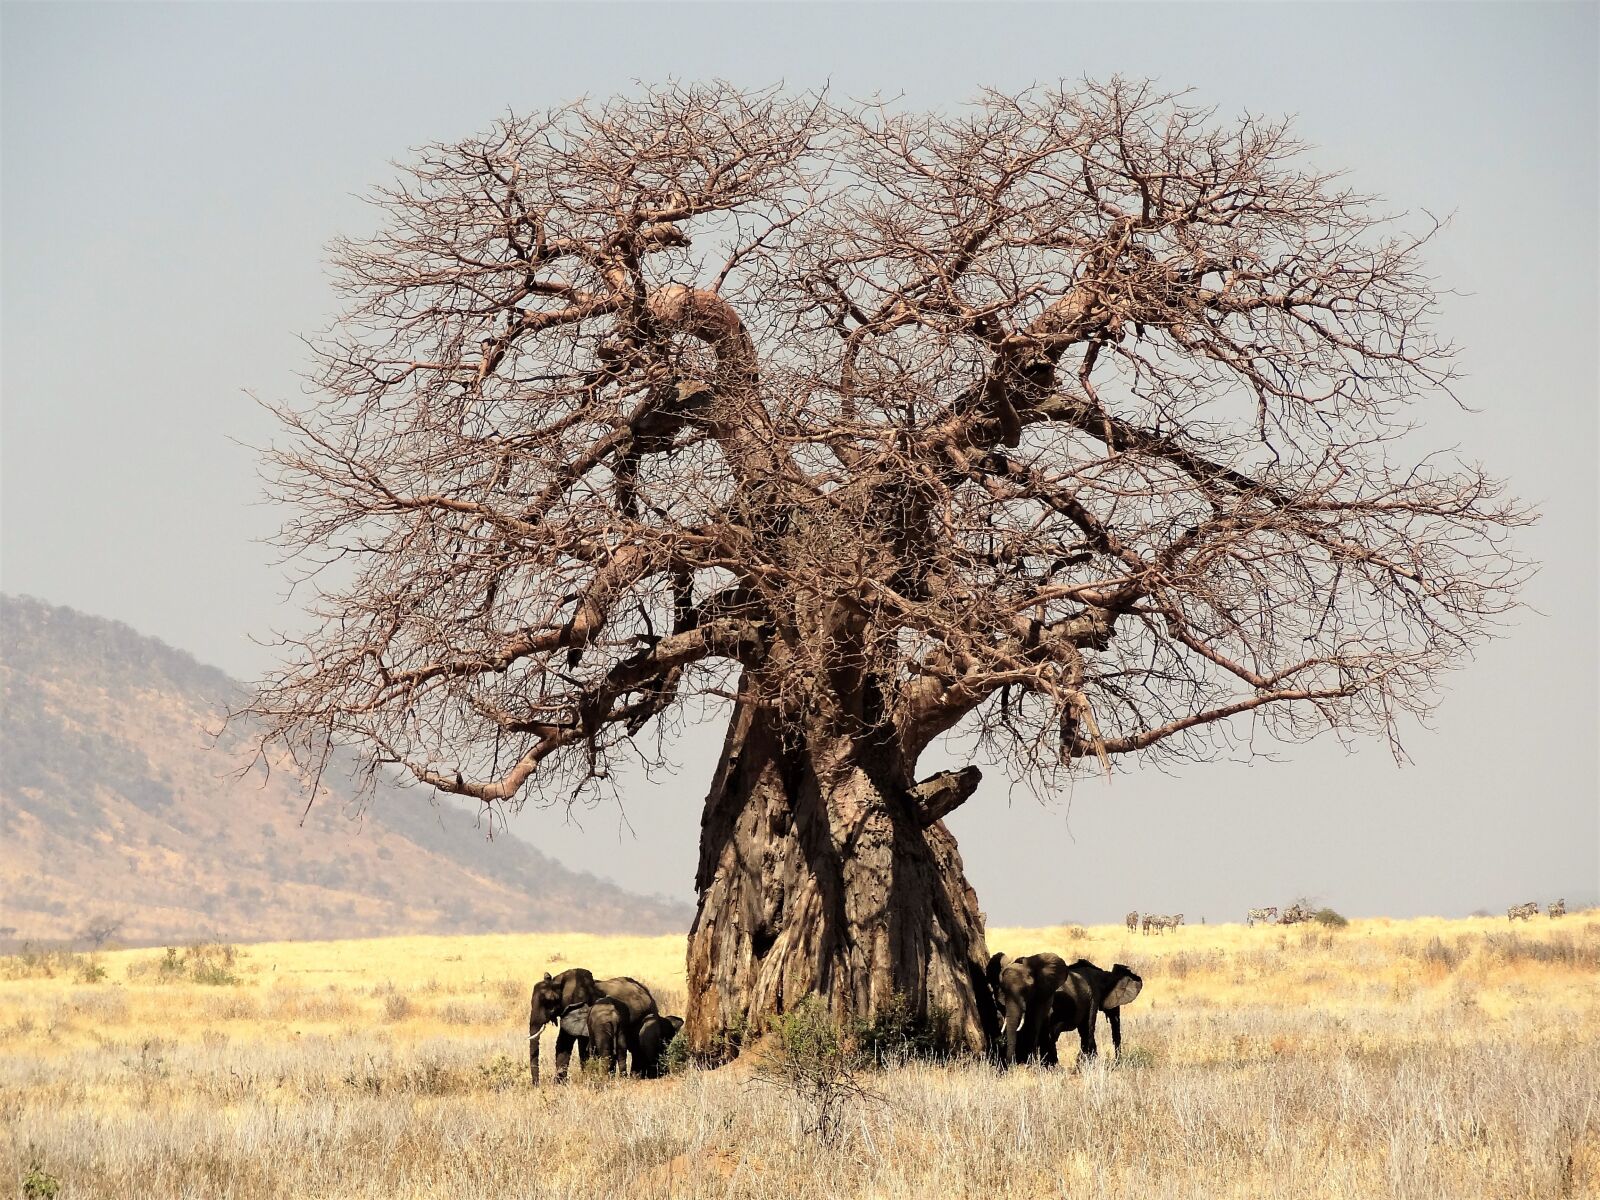 Sony Cyber-shot DSC-HX9V sample photo. Africa, tree, baobab photography